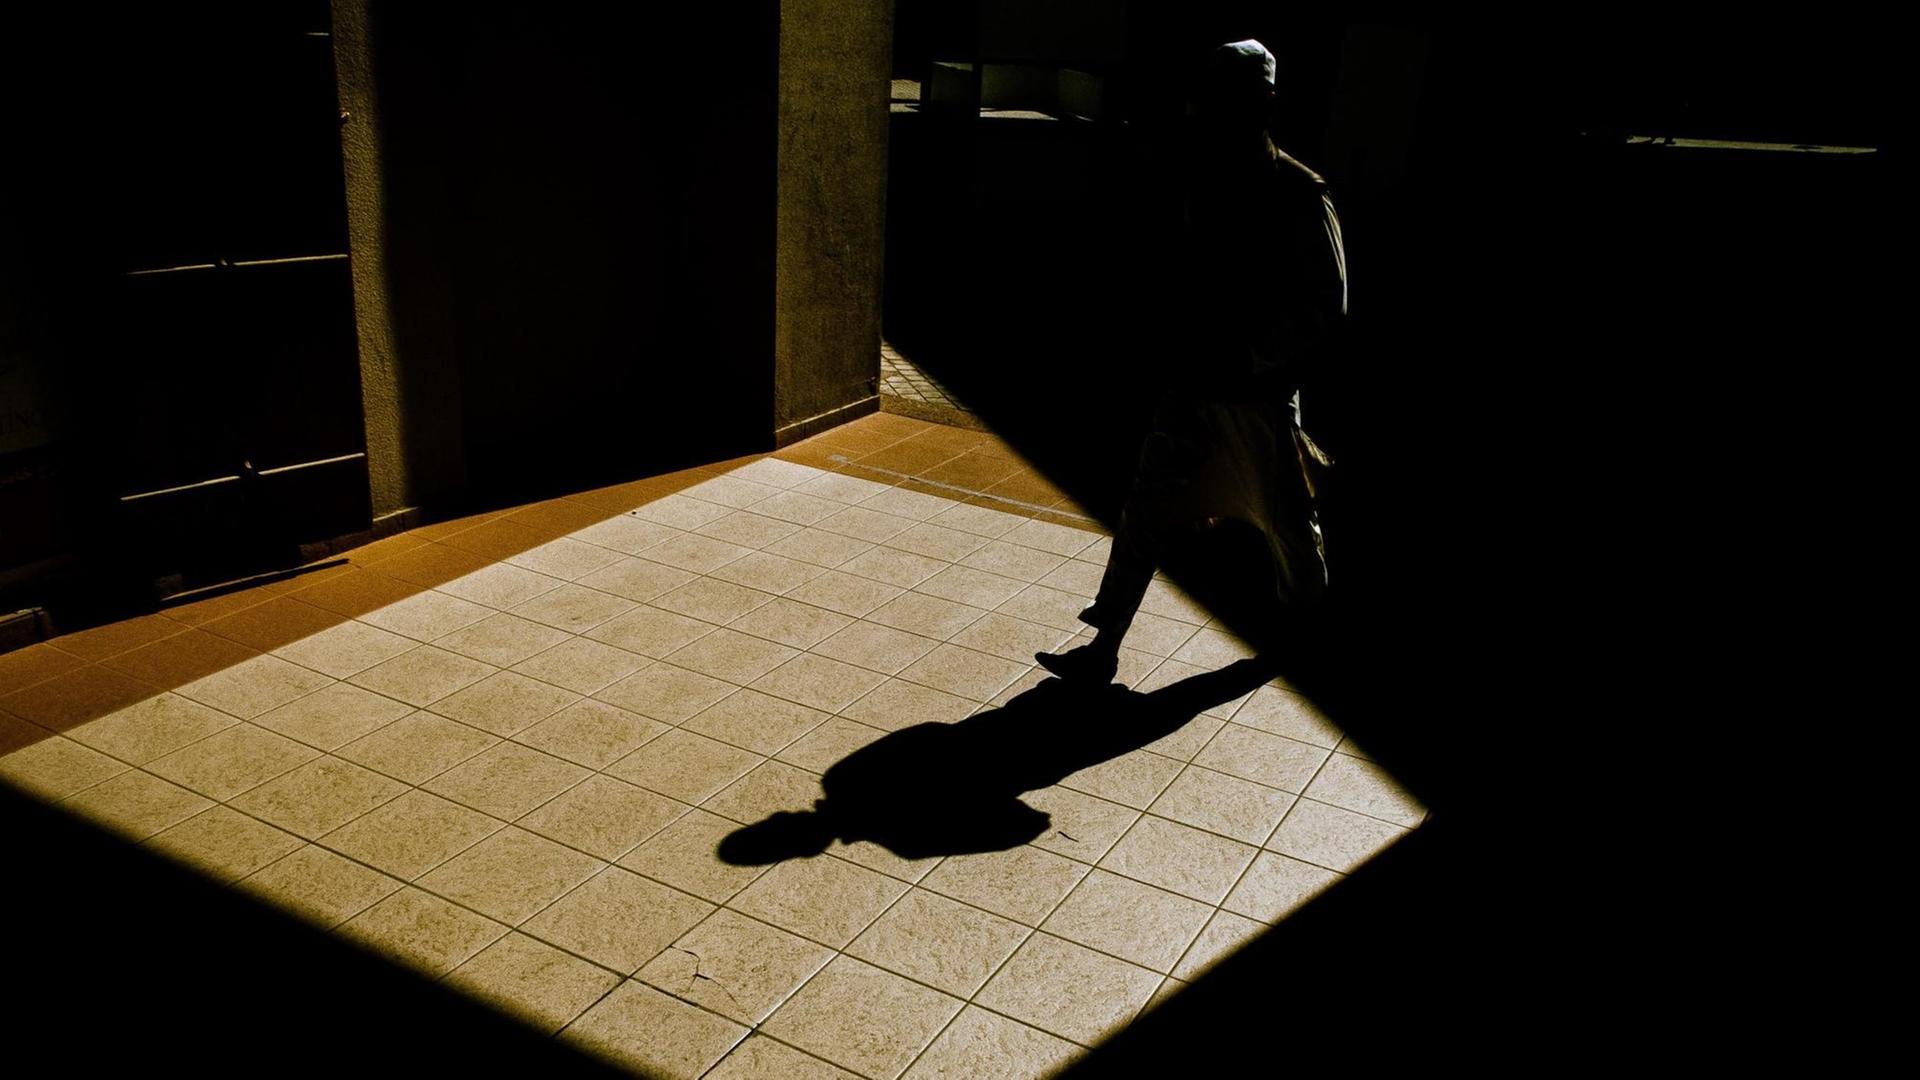 Mann läuft durch nächtliche Straßen, vor ihm sein Schatten.